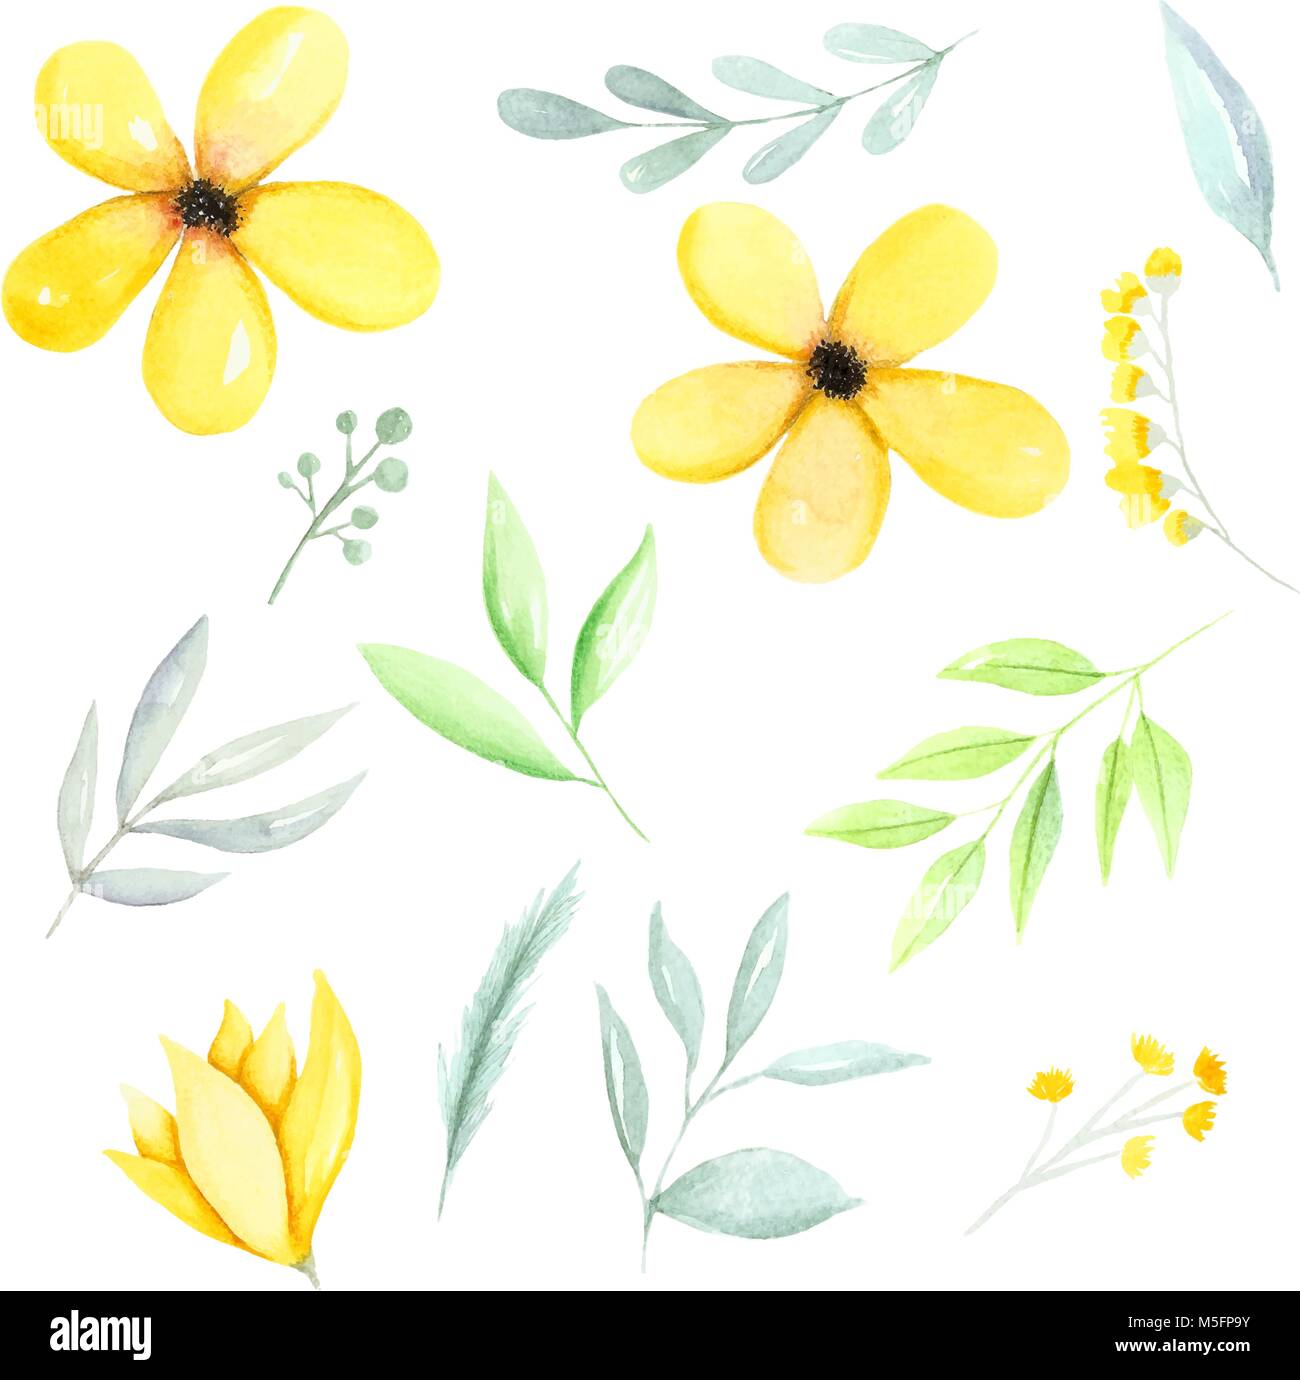 Acquerello giallo elementi botanici, fiori di colore giallo, il verde delle foglie e rami disegnati a mano. Acquerello Illustrazione disegnata a mano. Illustrazione Vettoriale